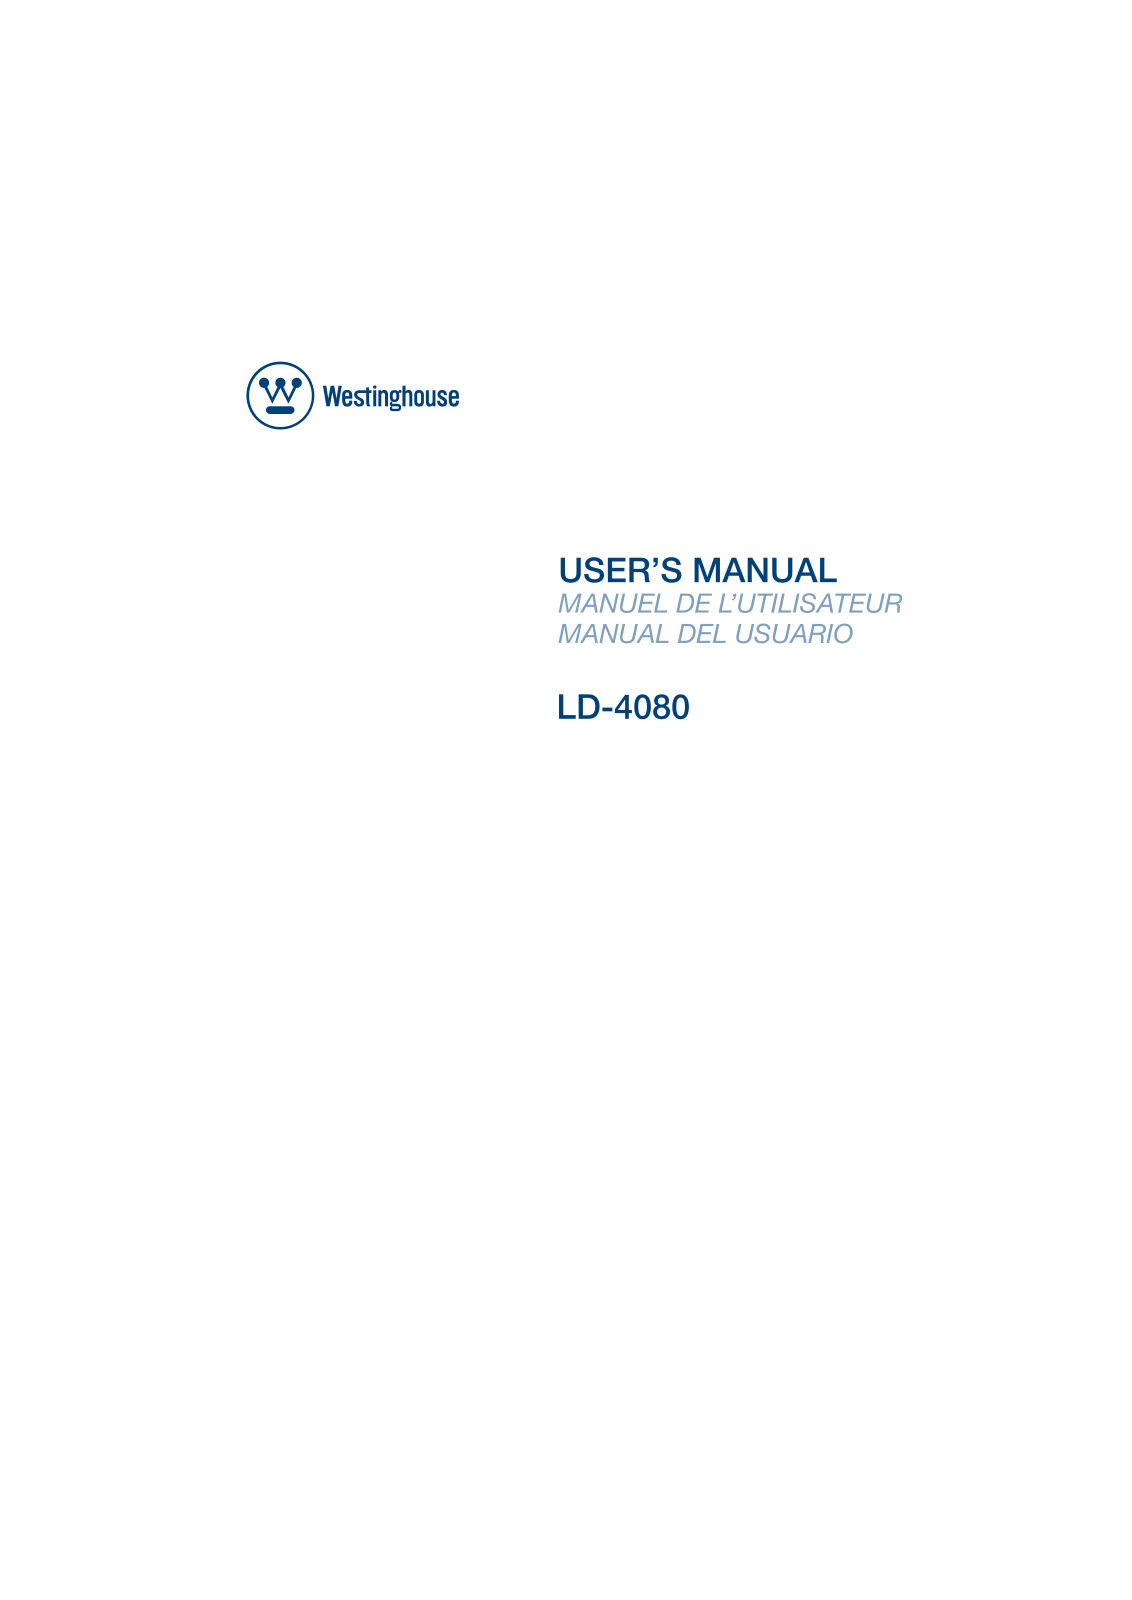 Westinghouse Digital LD-4080 User Manual